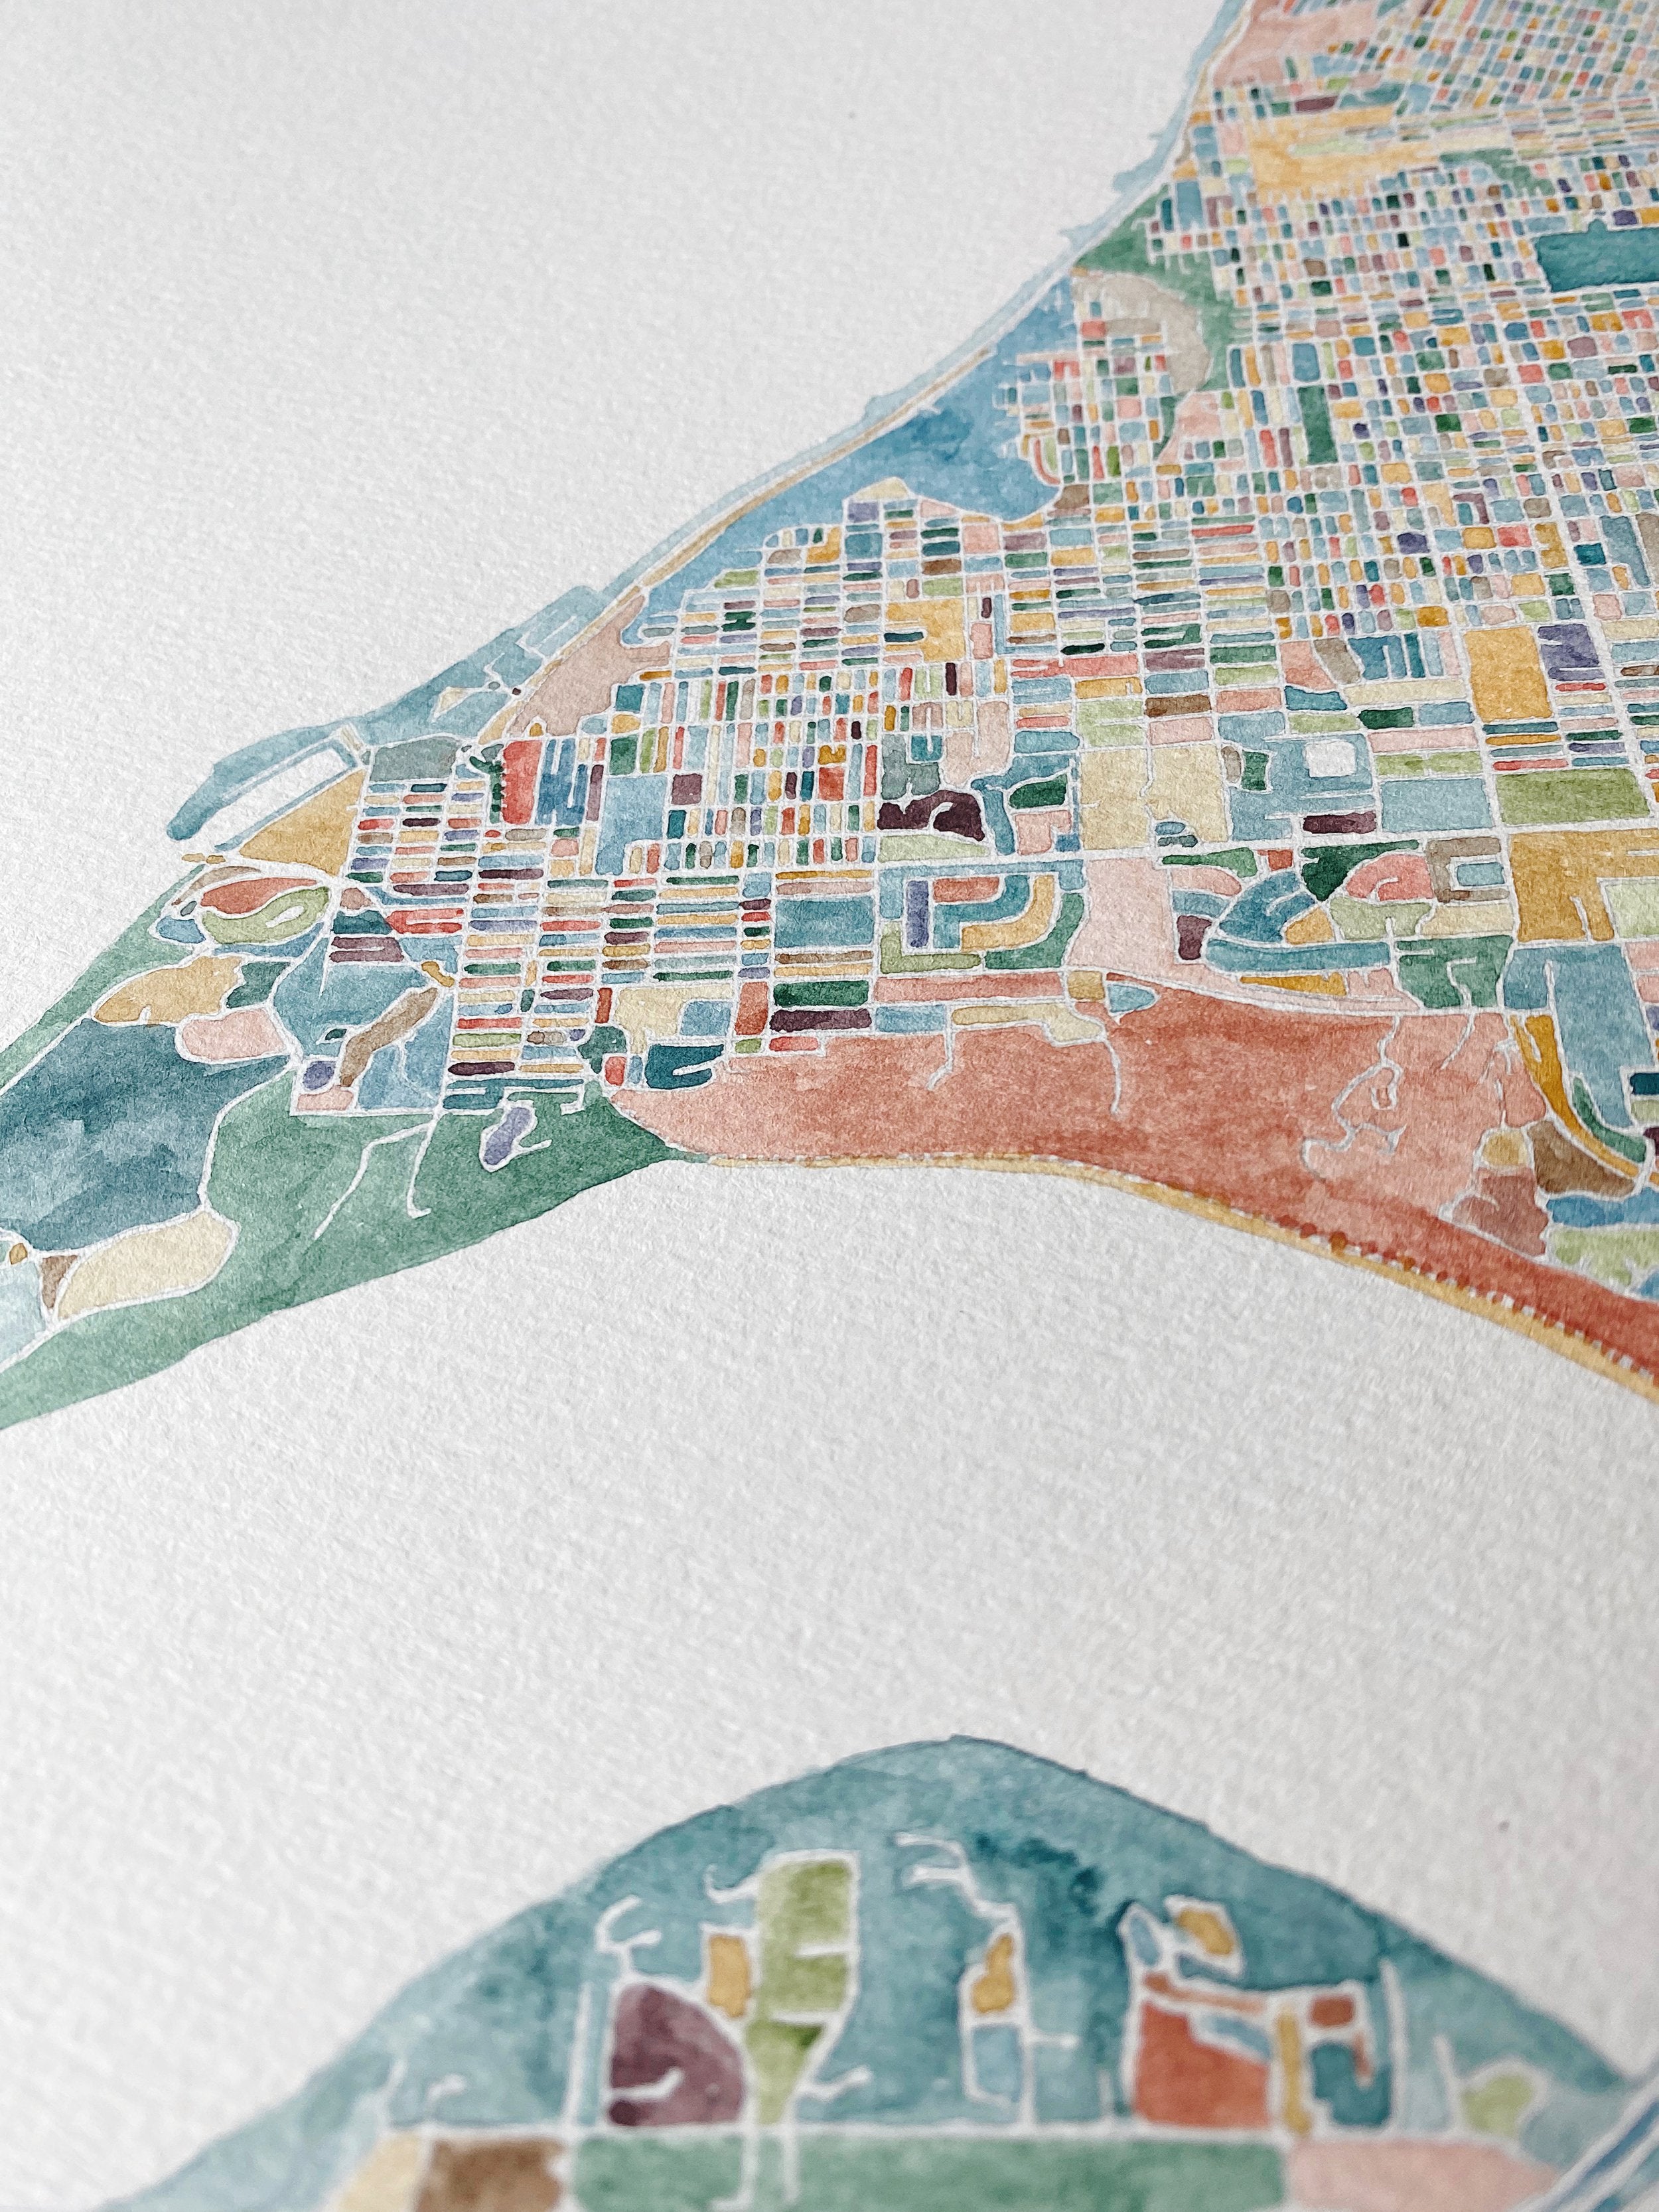 TACOMA ColorFULL Watercolor City Blocks Map: ORIGINAL PAINTING